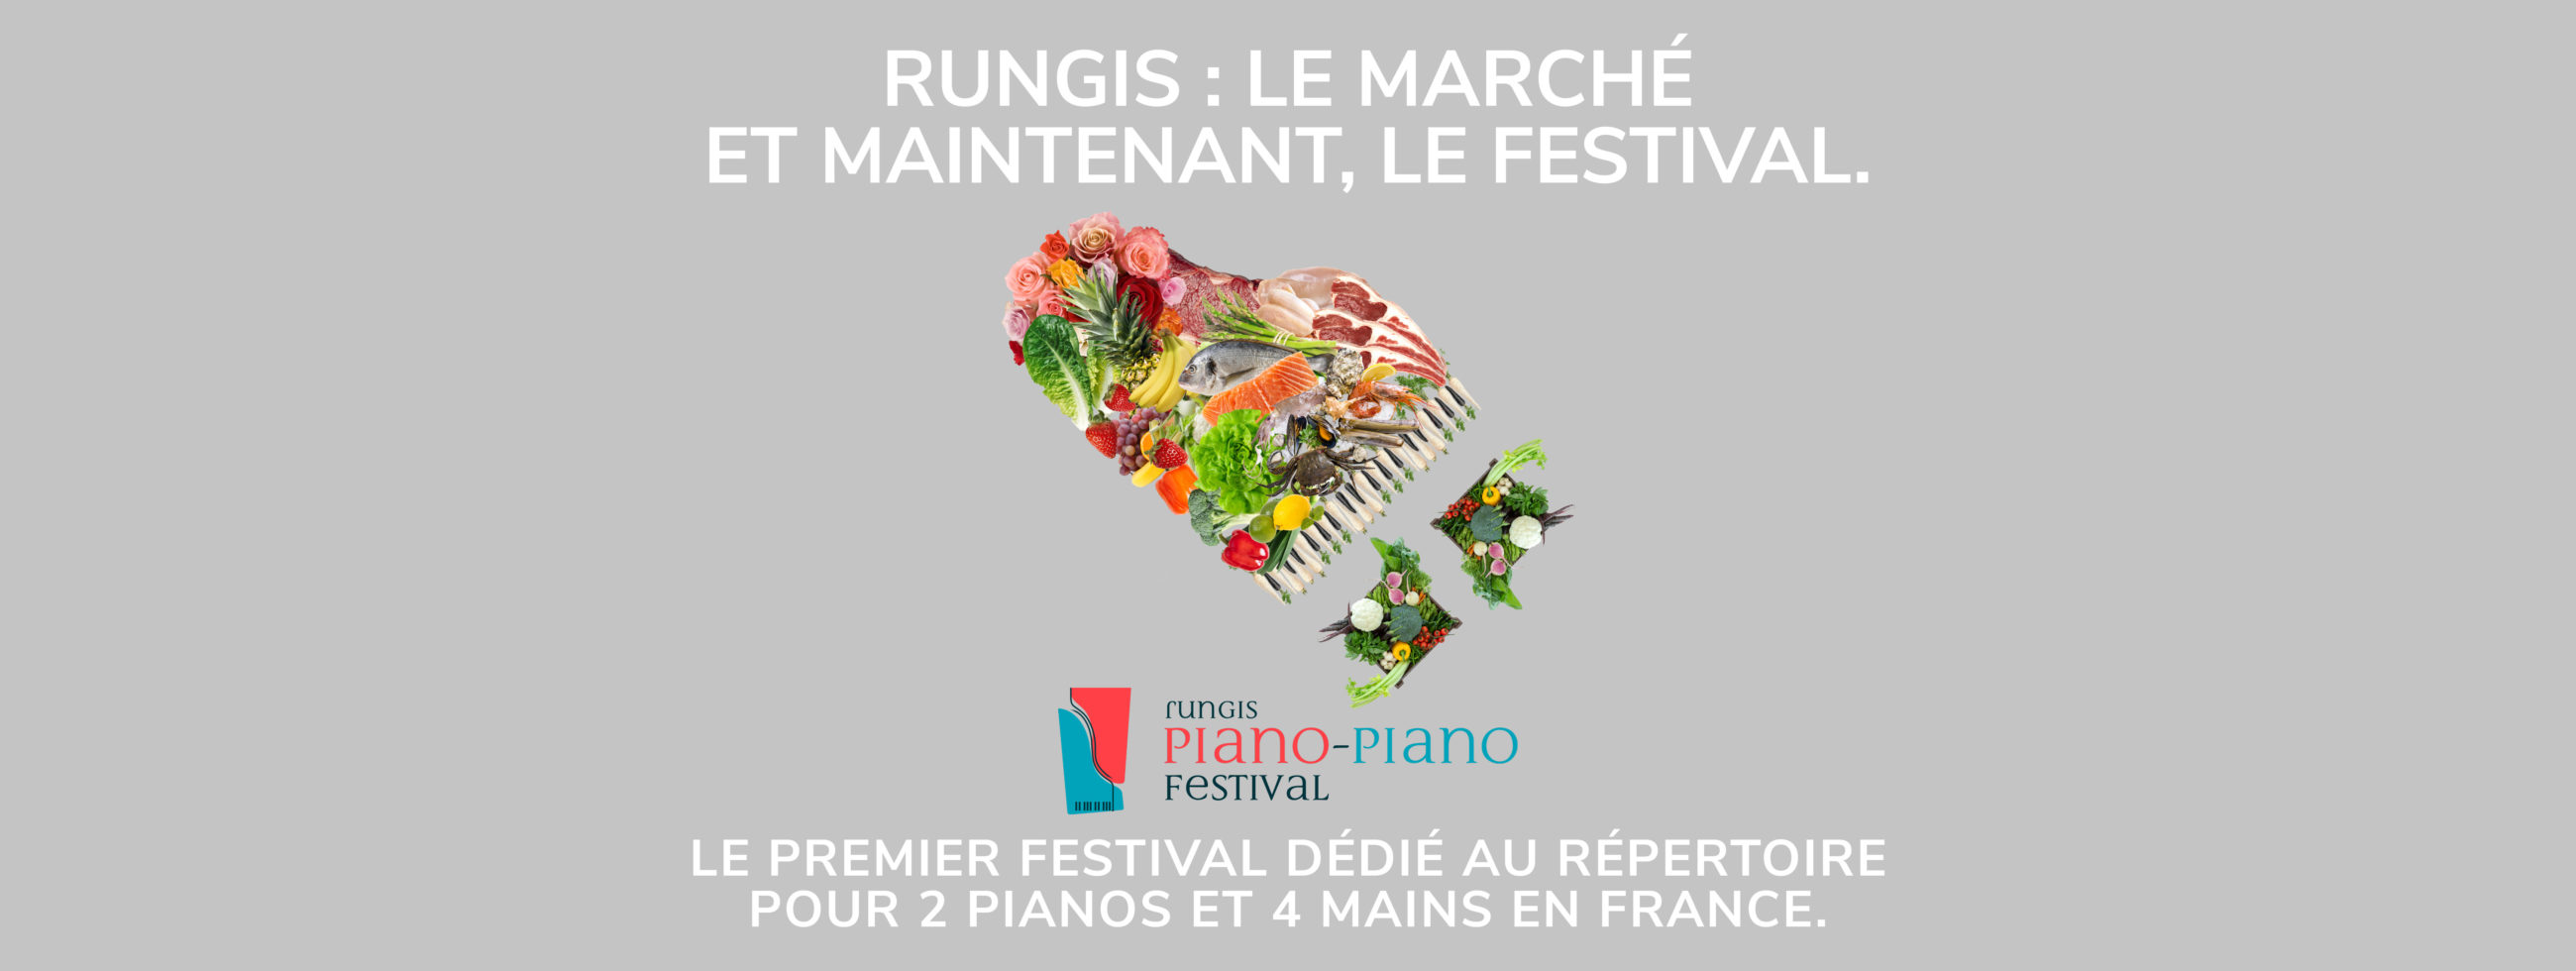 Rungis Piano-Piano publicité